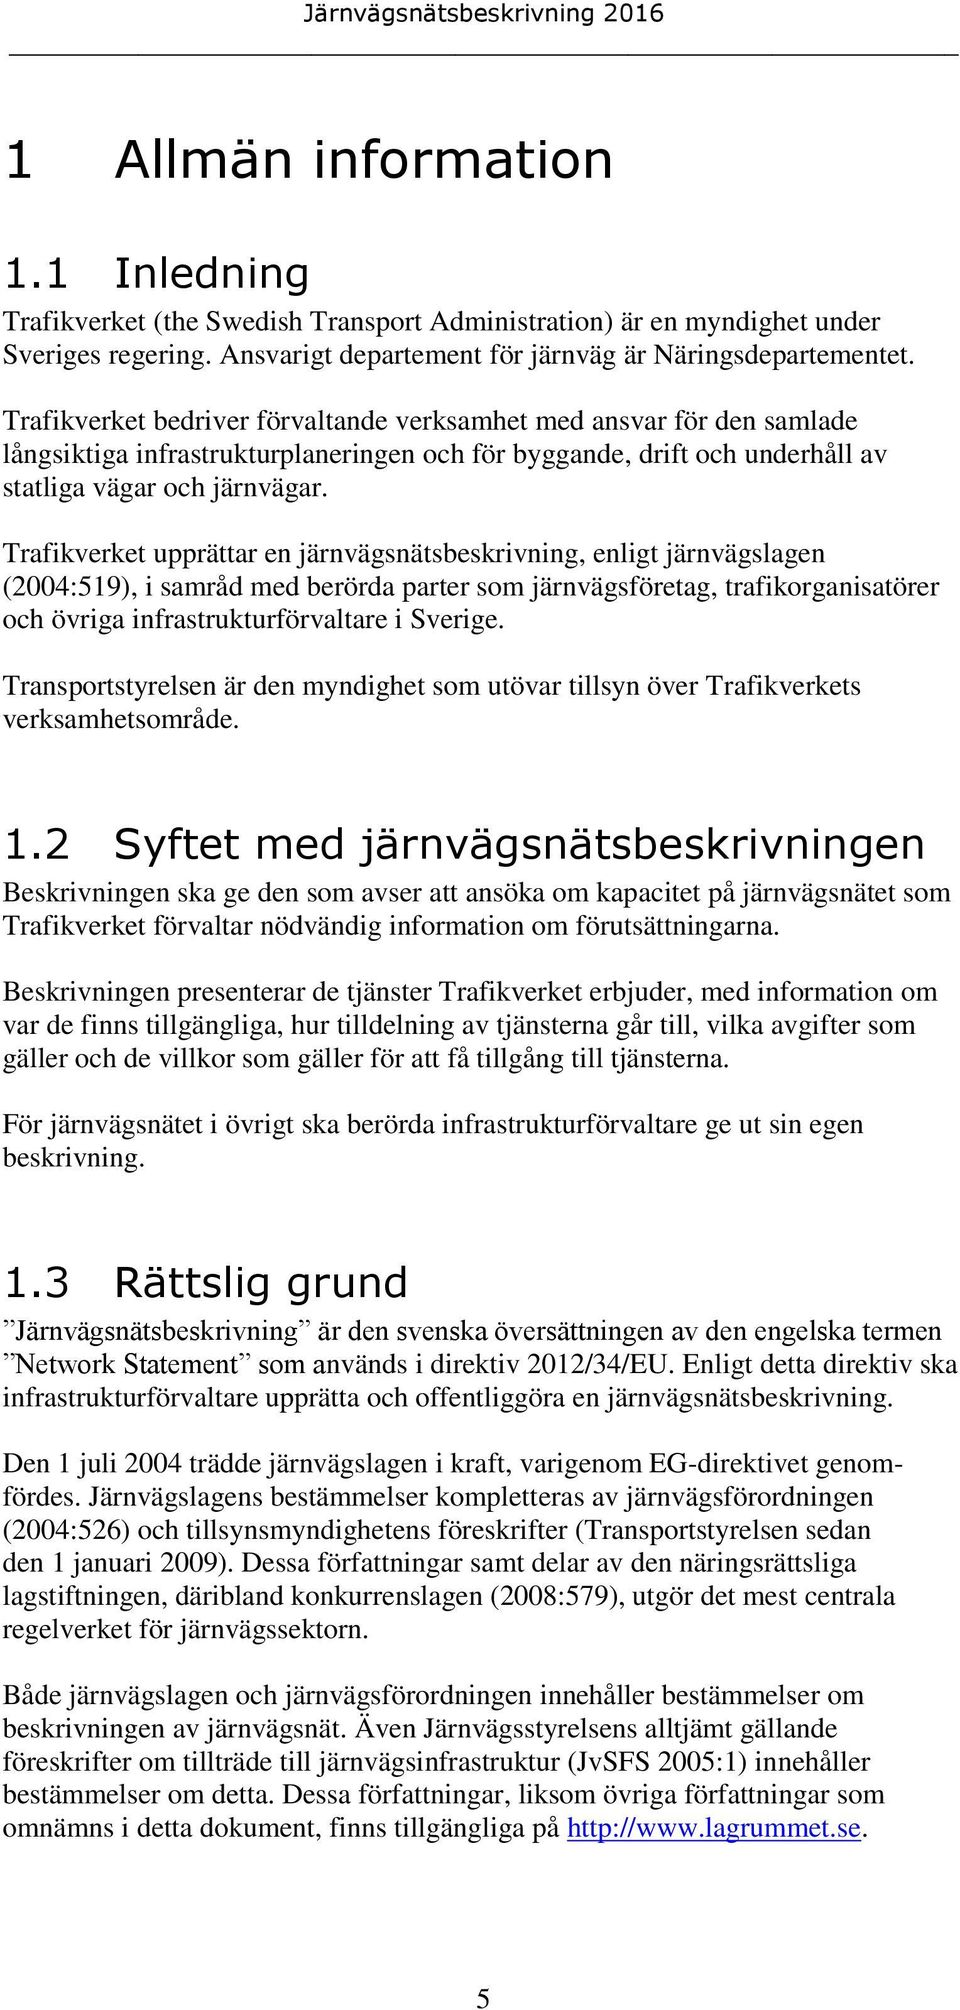 Trafikverket upprättar en järnvägsnätsbeskrivning, enligt järnvägslagen (2004:519), i samråd med berörda parter som järnvägsföretag, trafikorganisatörer och övriga infrastrukturförvaltare i Sverige.